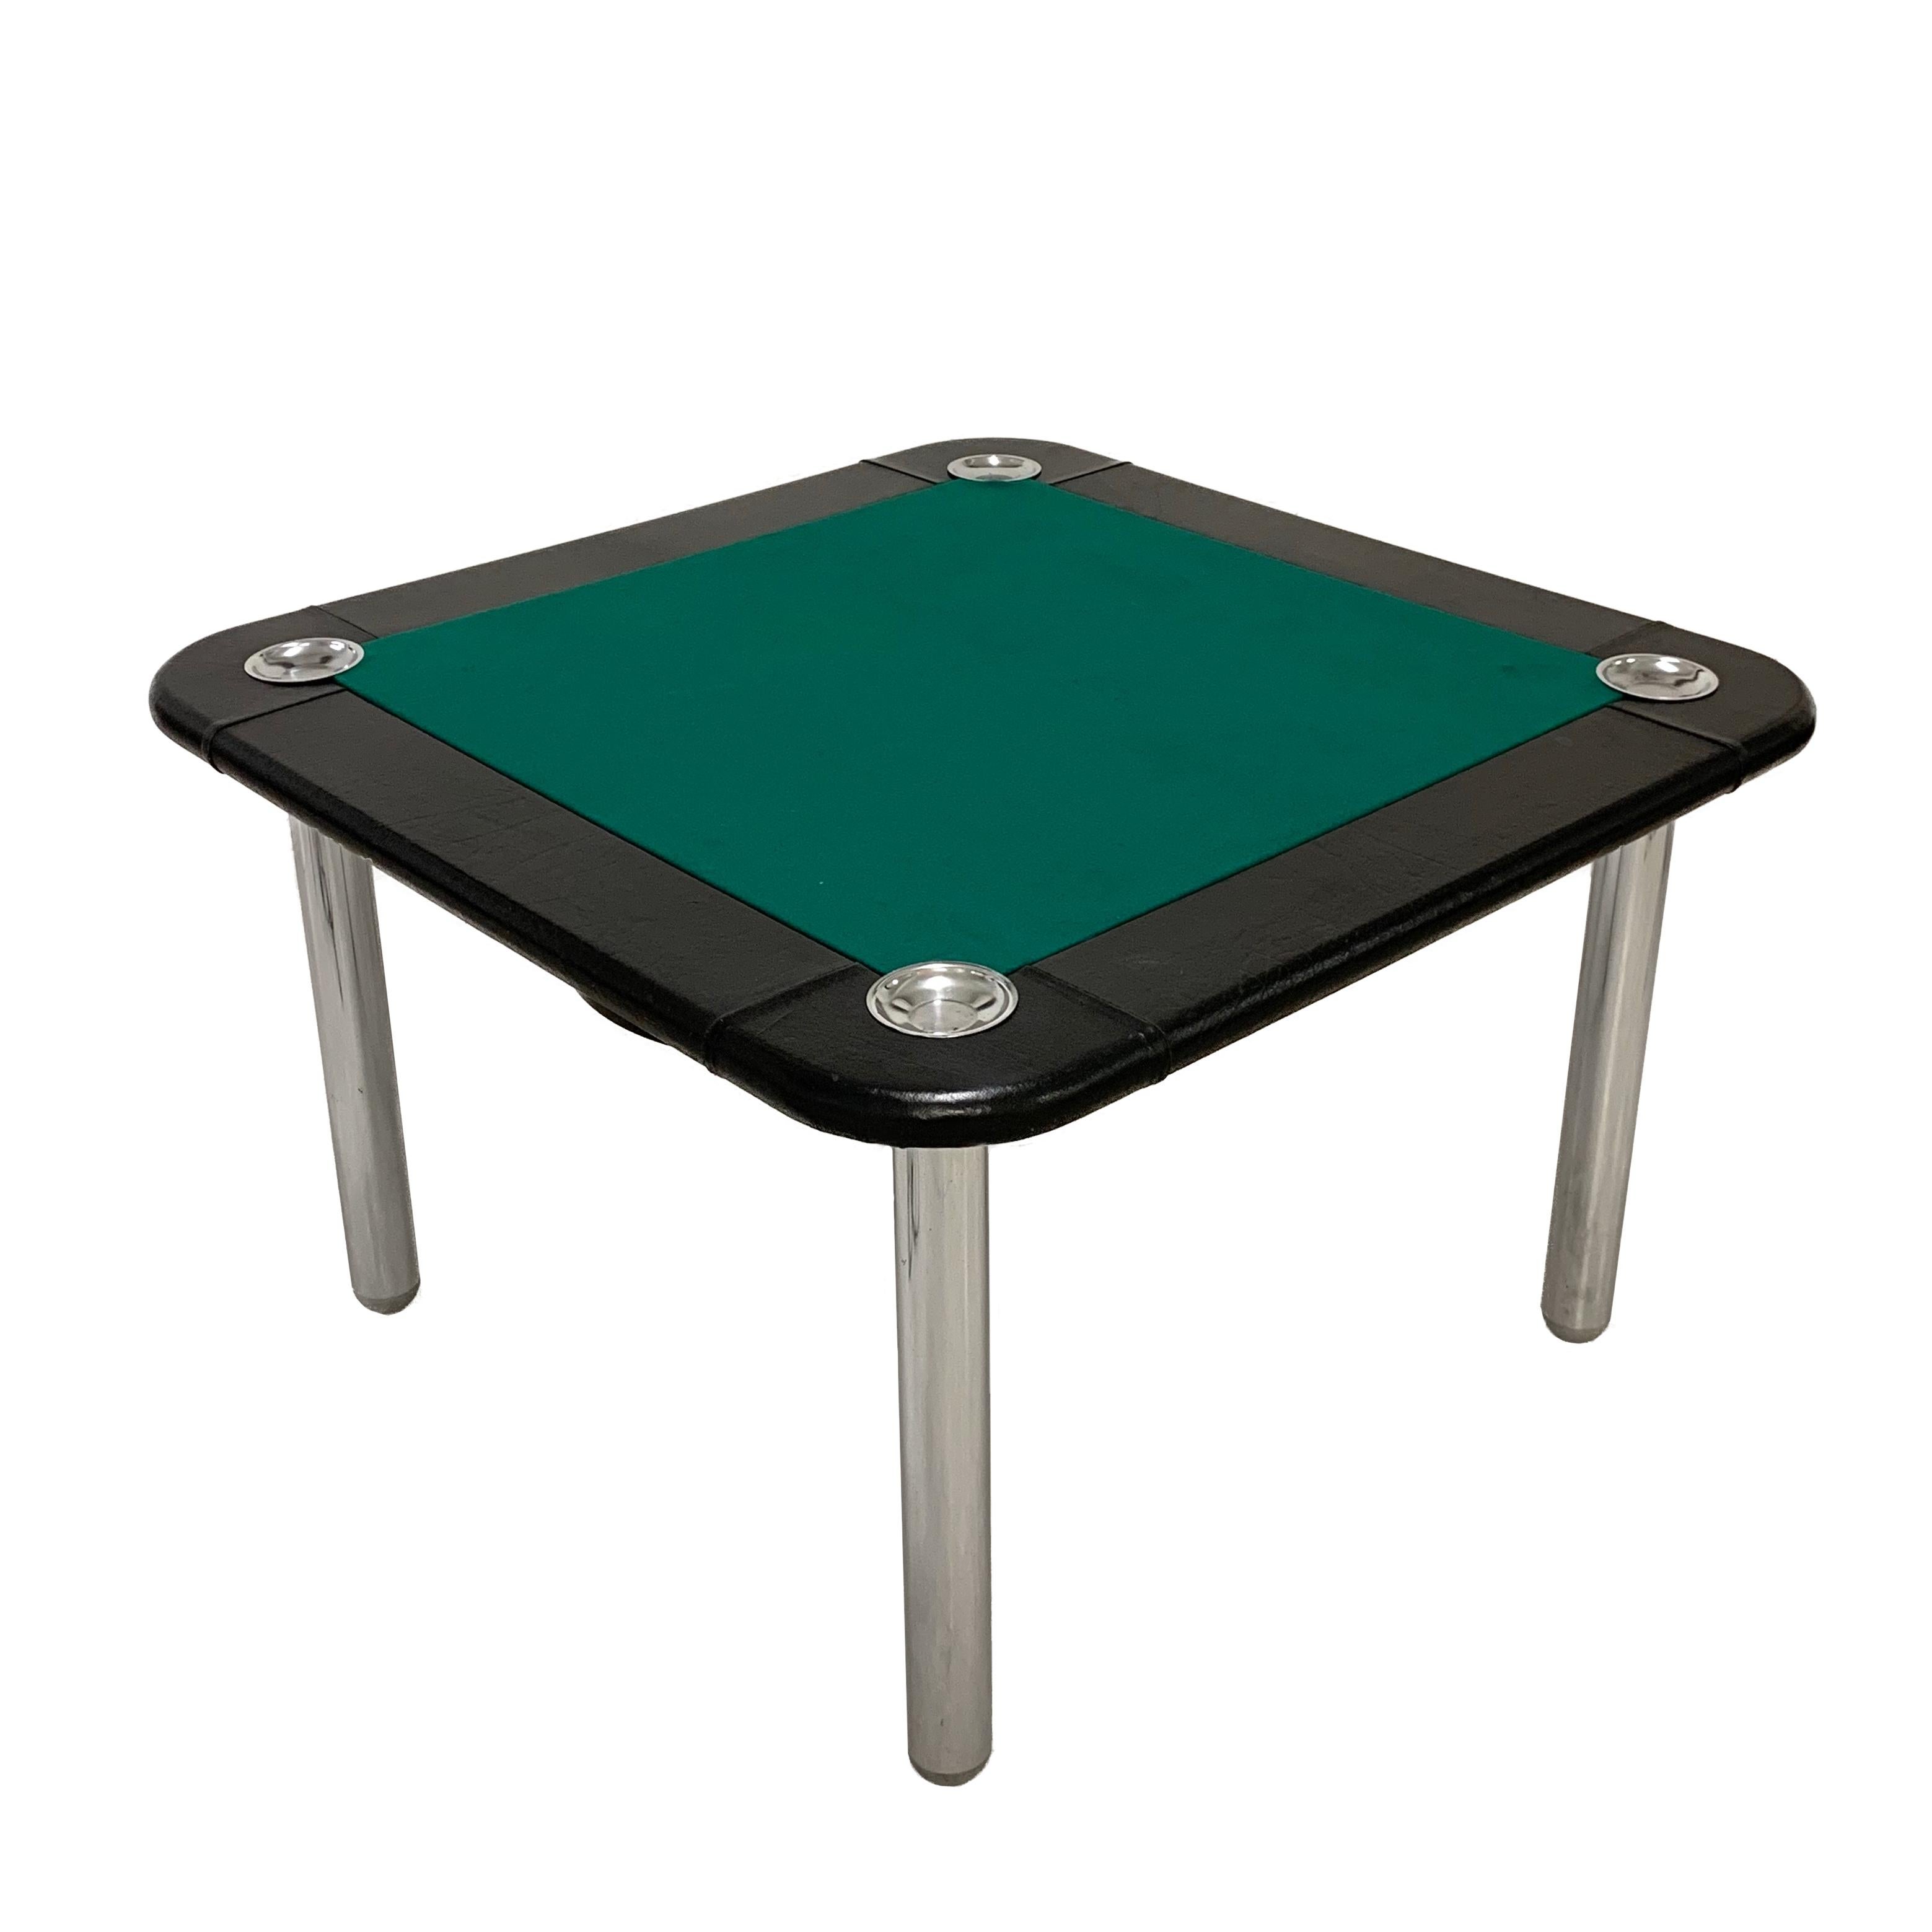 Grande table de jeu en cuir et acier chromé du milieu du siècle dernier. Cette table à cartes a été produite en Italie dans les années 1960 et est attribuée à Zanotta.

Le plateau est en tissu vert neuf, les bords en cuir noir et quatre cendriers.